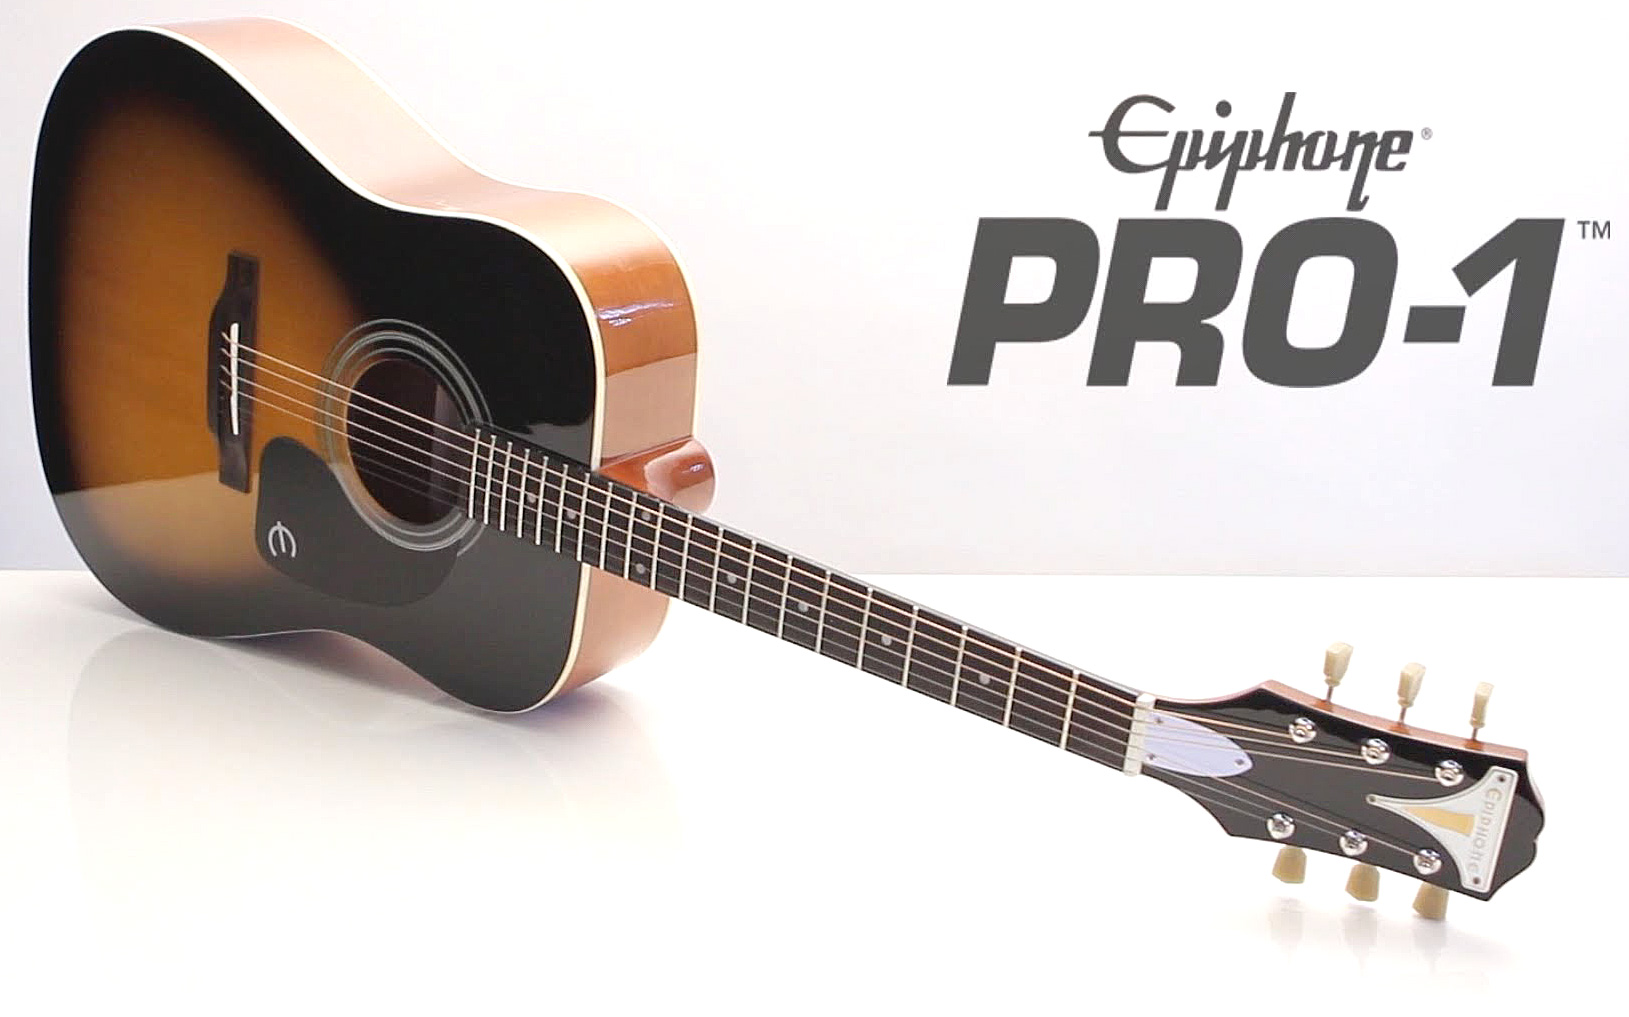 Epiphone Pro-1 Acoustic Dreadnought Epicea Acajou 2016 - Vintage Sunburst - Guitarra acústica & electro - Variation 2